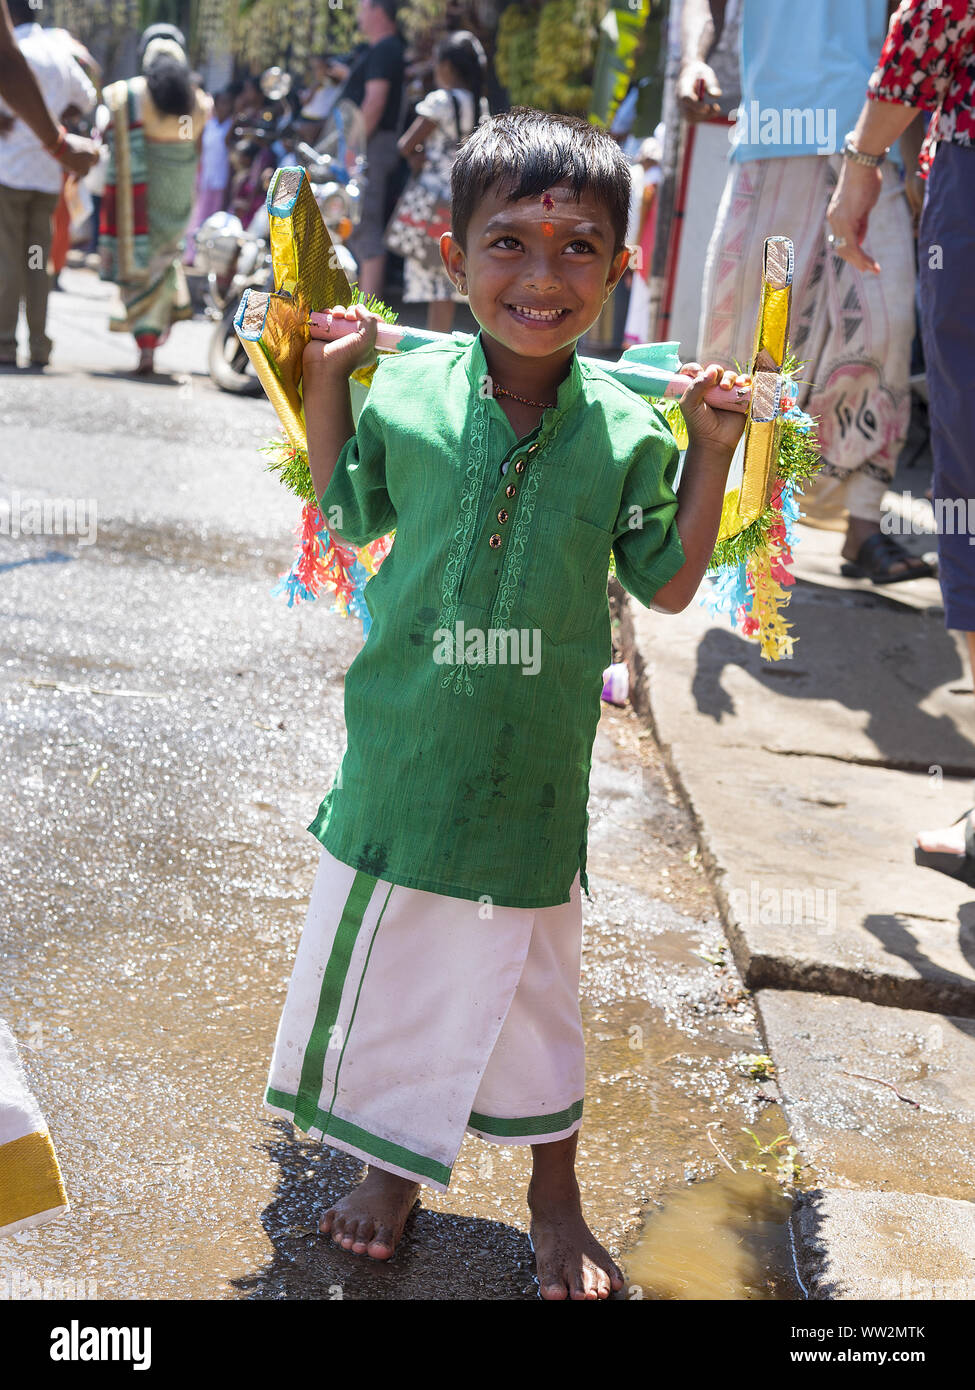 Pussellawa, Sri Lanka, 20.03.2019: Hindu Festival der Thaipusam - Body Piercing Rituale unter dem Blut Mond. Junge mit Schulter Gewichte. Stockfoto